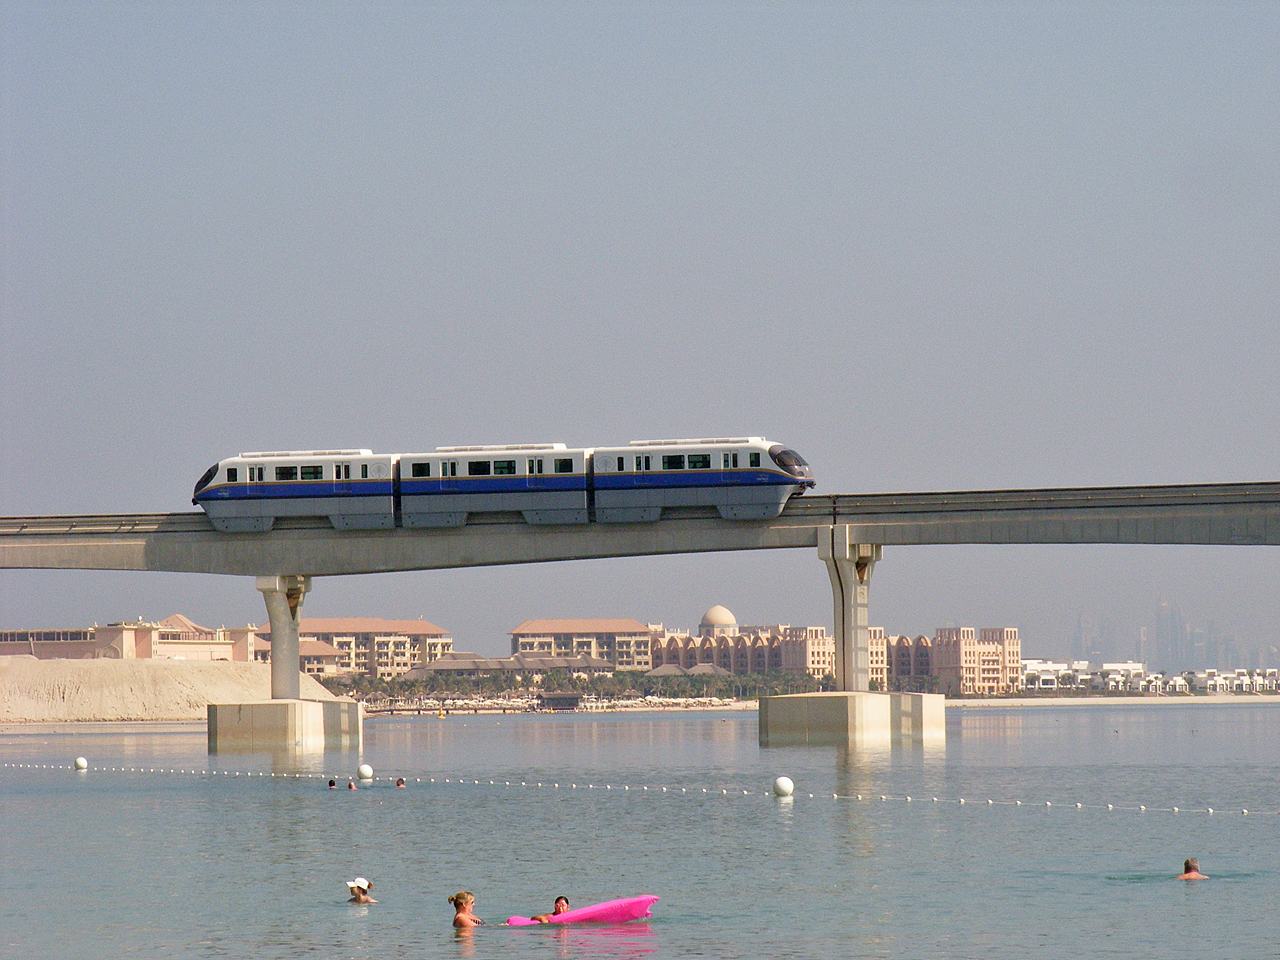 Monorail halad a Pálma-szigeten található Atlantis hoteltől a város felé